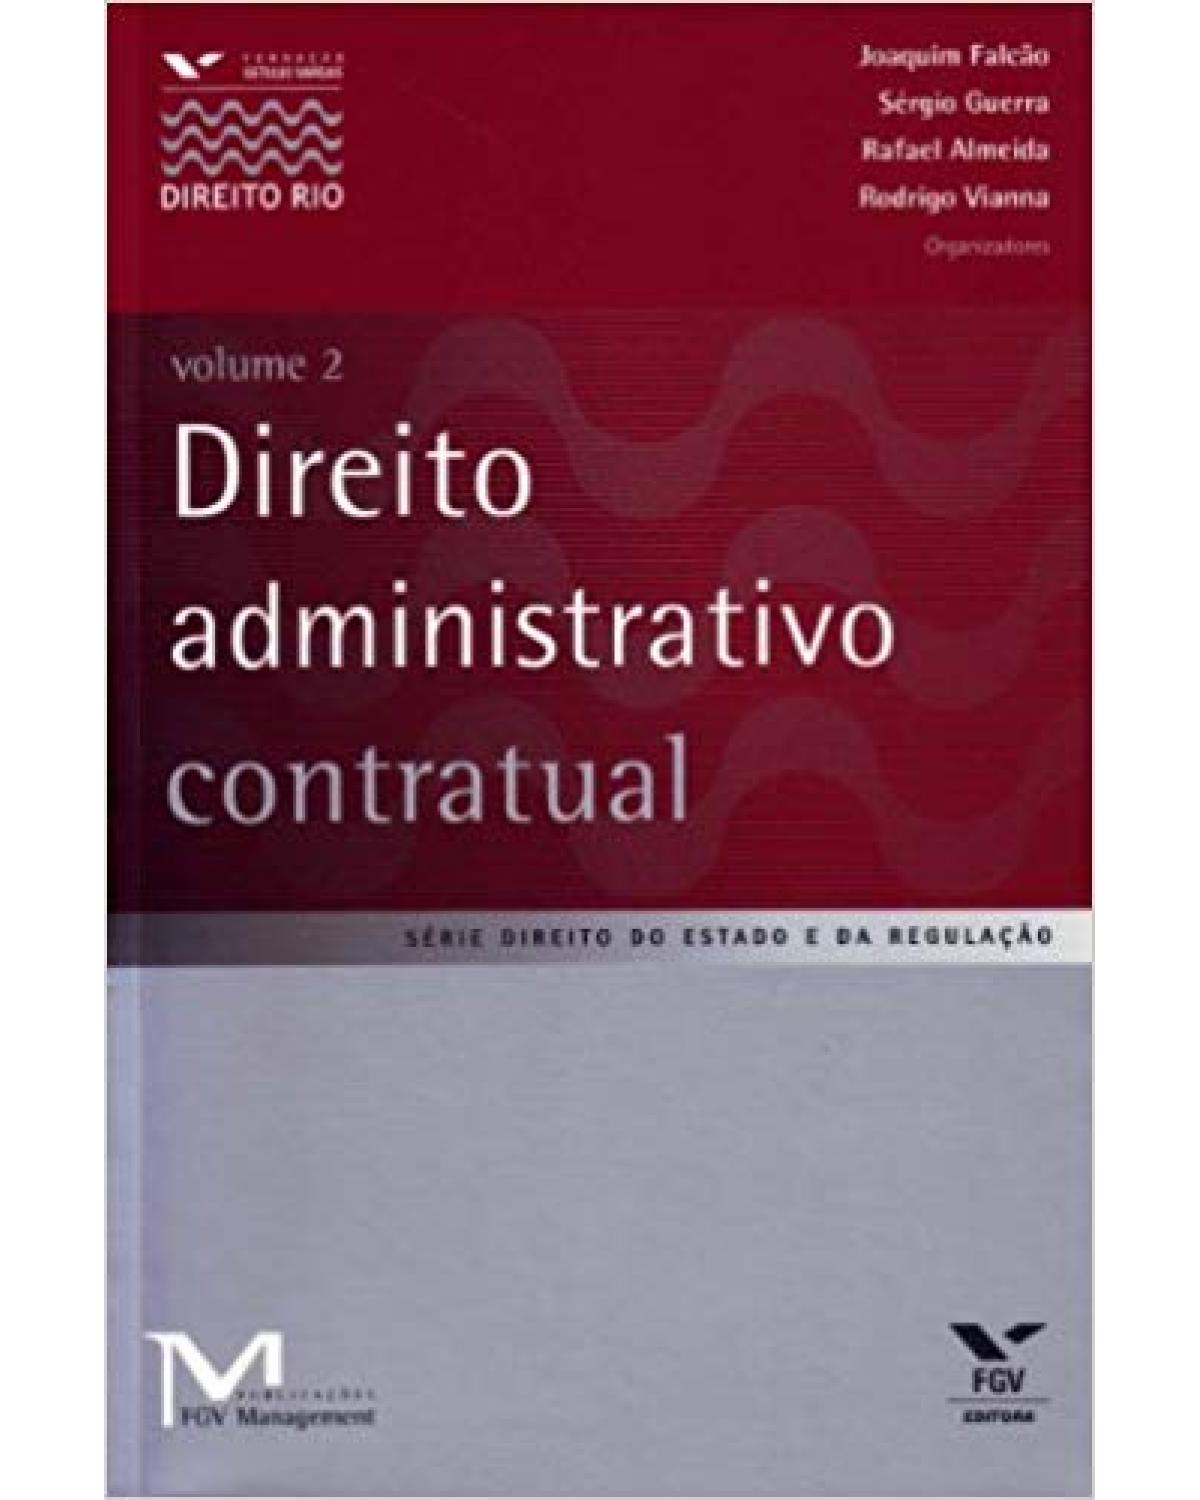 Direito administrativo contratual - Volume 2 - 1ª Edição